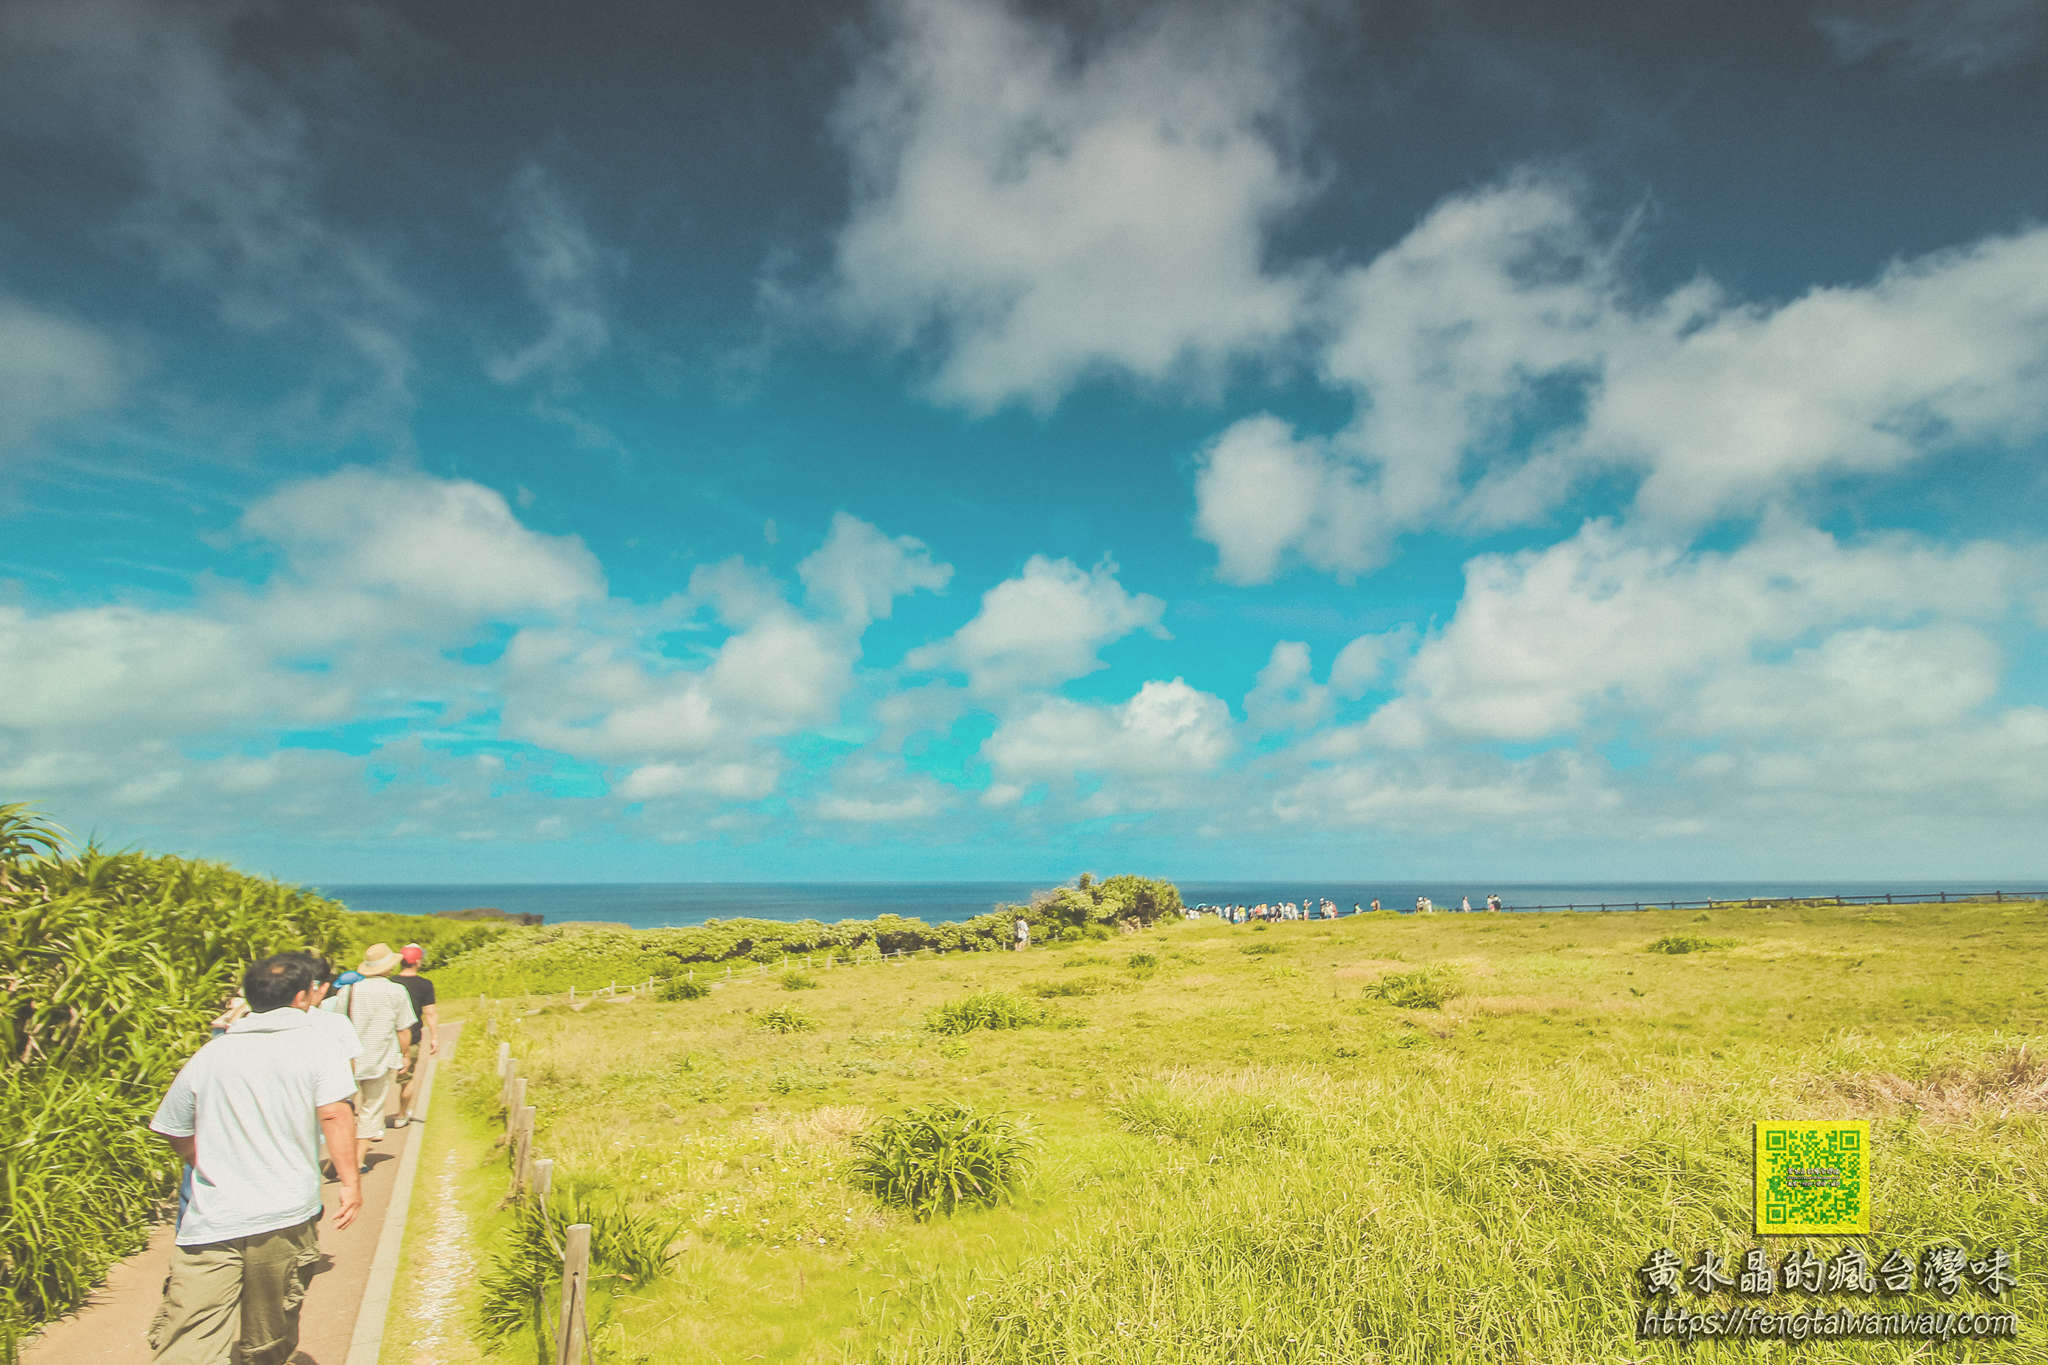 萬座毛【沖繩景點】|沖繩自駕旅遊中部高人氣必遊必拍大草原象鼻岩景點